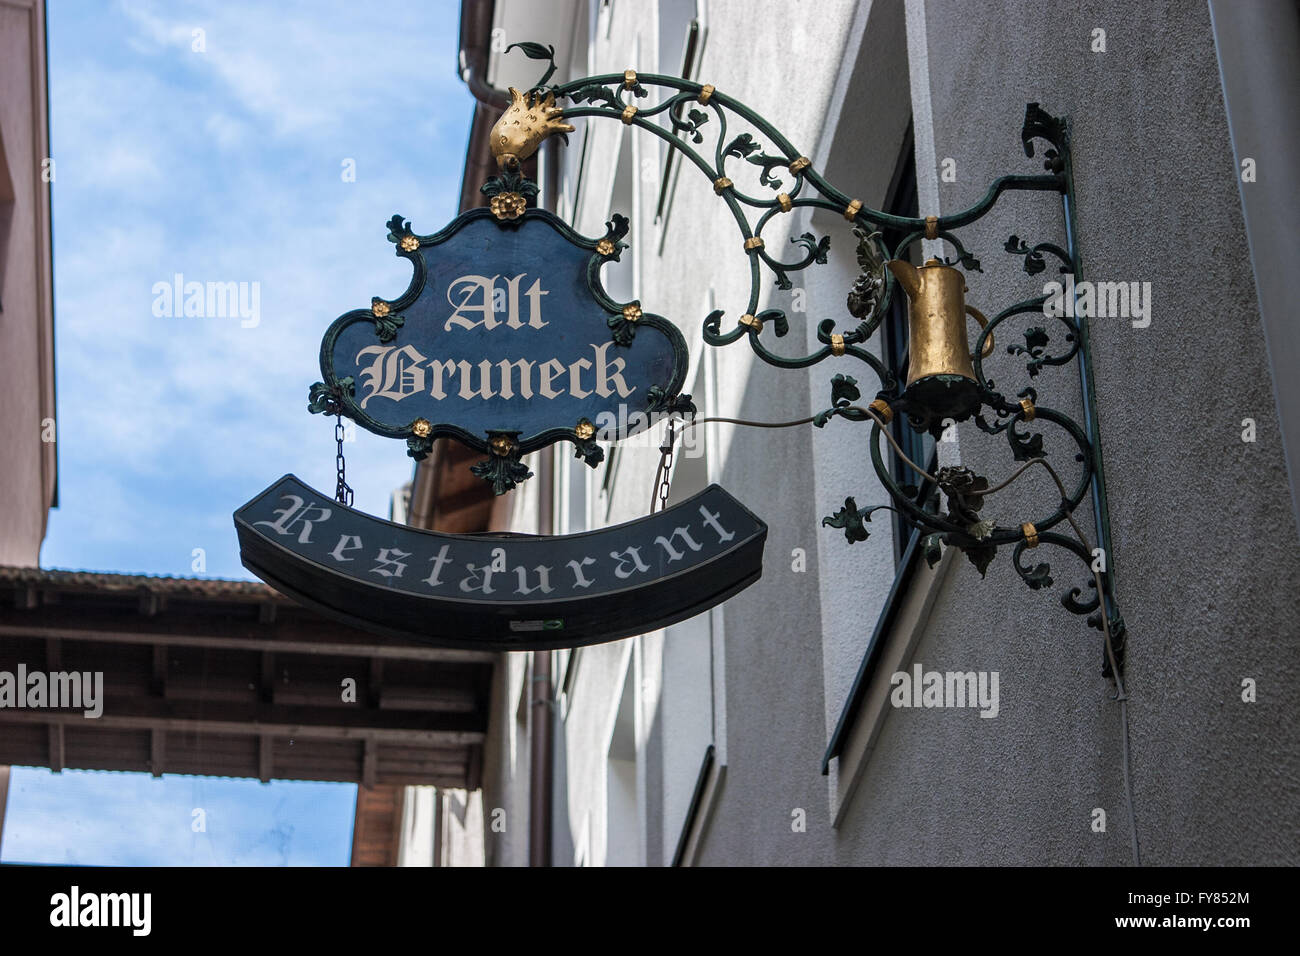 Antiguo restaurante característico signo en Brunico Bruneck, Trentino Alto Adige Sudtirol - Italia Foto de stock